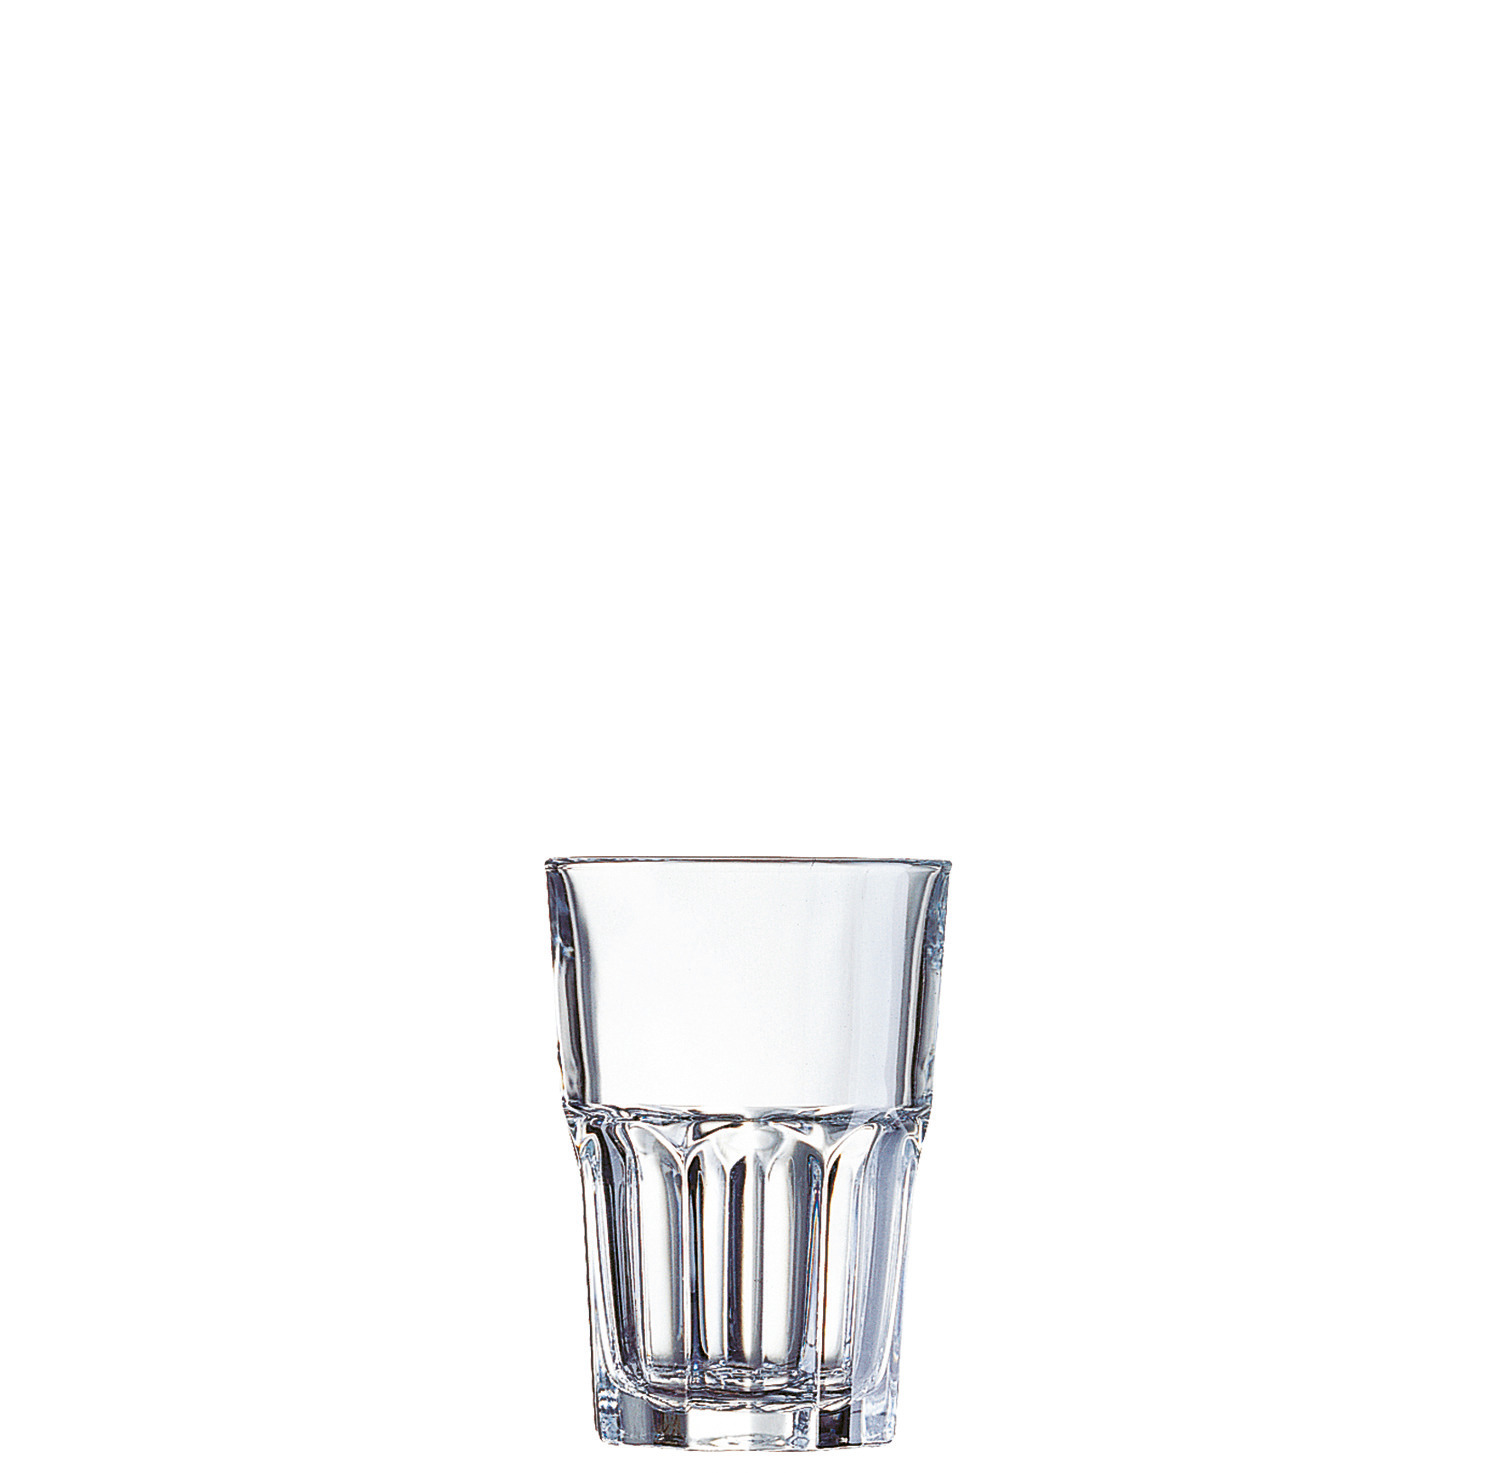 Longdrinkglas "FH35" stapelbar 84 mm / 0,35 l 0,25 /-/ transparent